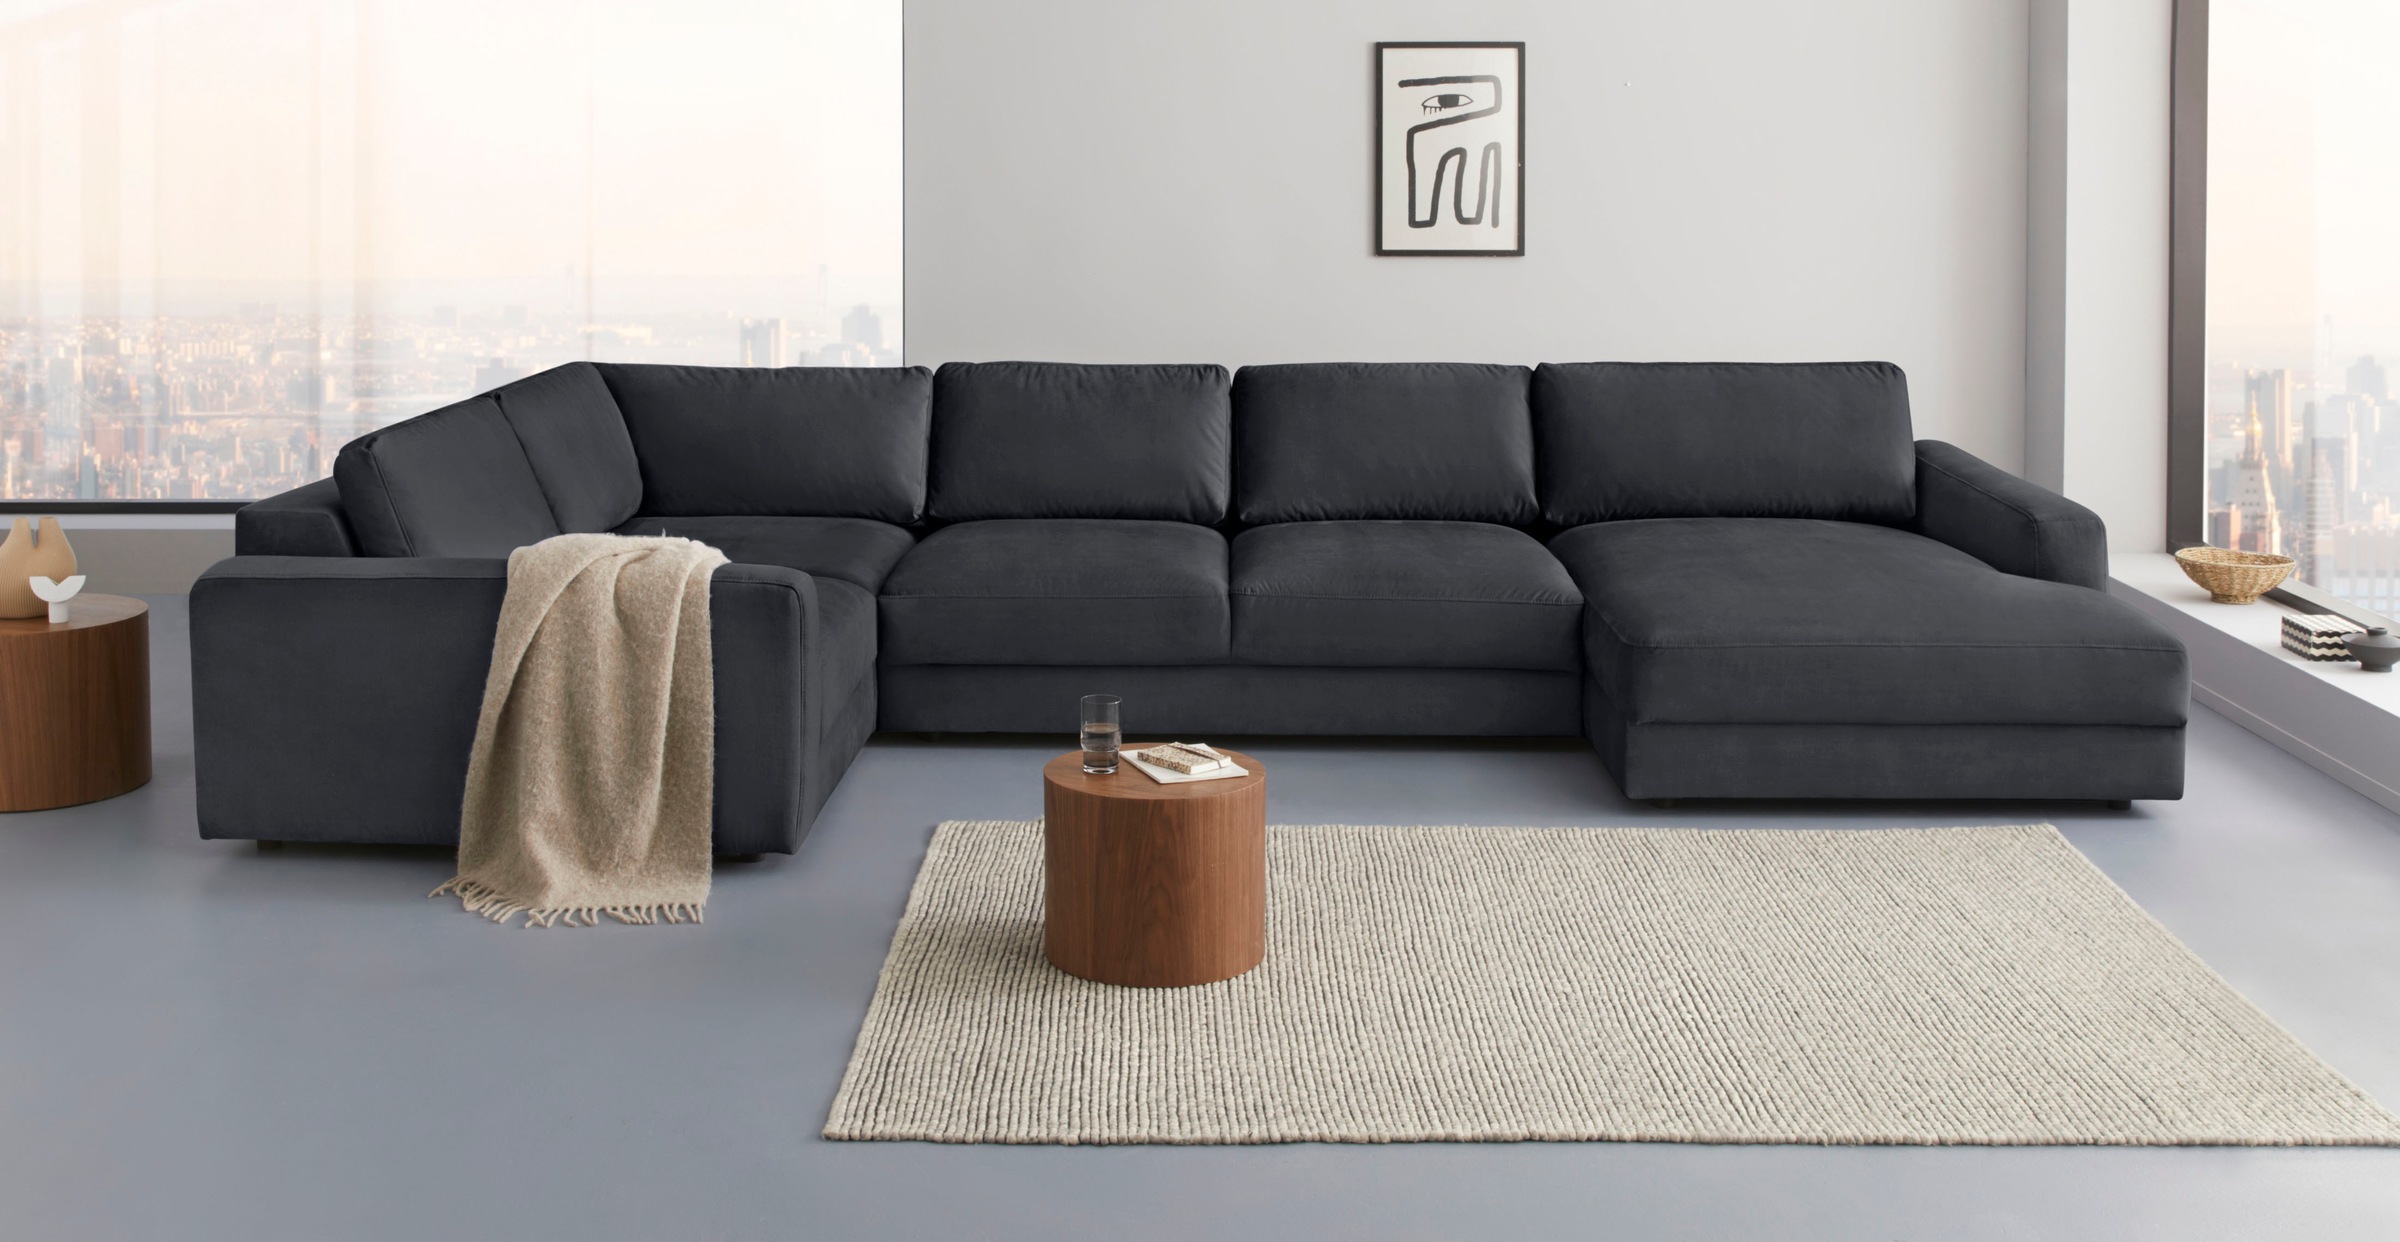 Places of Style Sofa-Mittelelement »Bloomfield«, passende Erweiterung zu den Garnituren "Bloomfield"